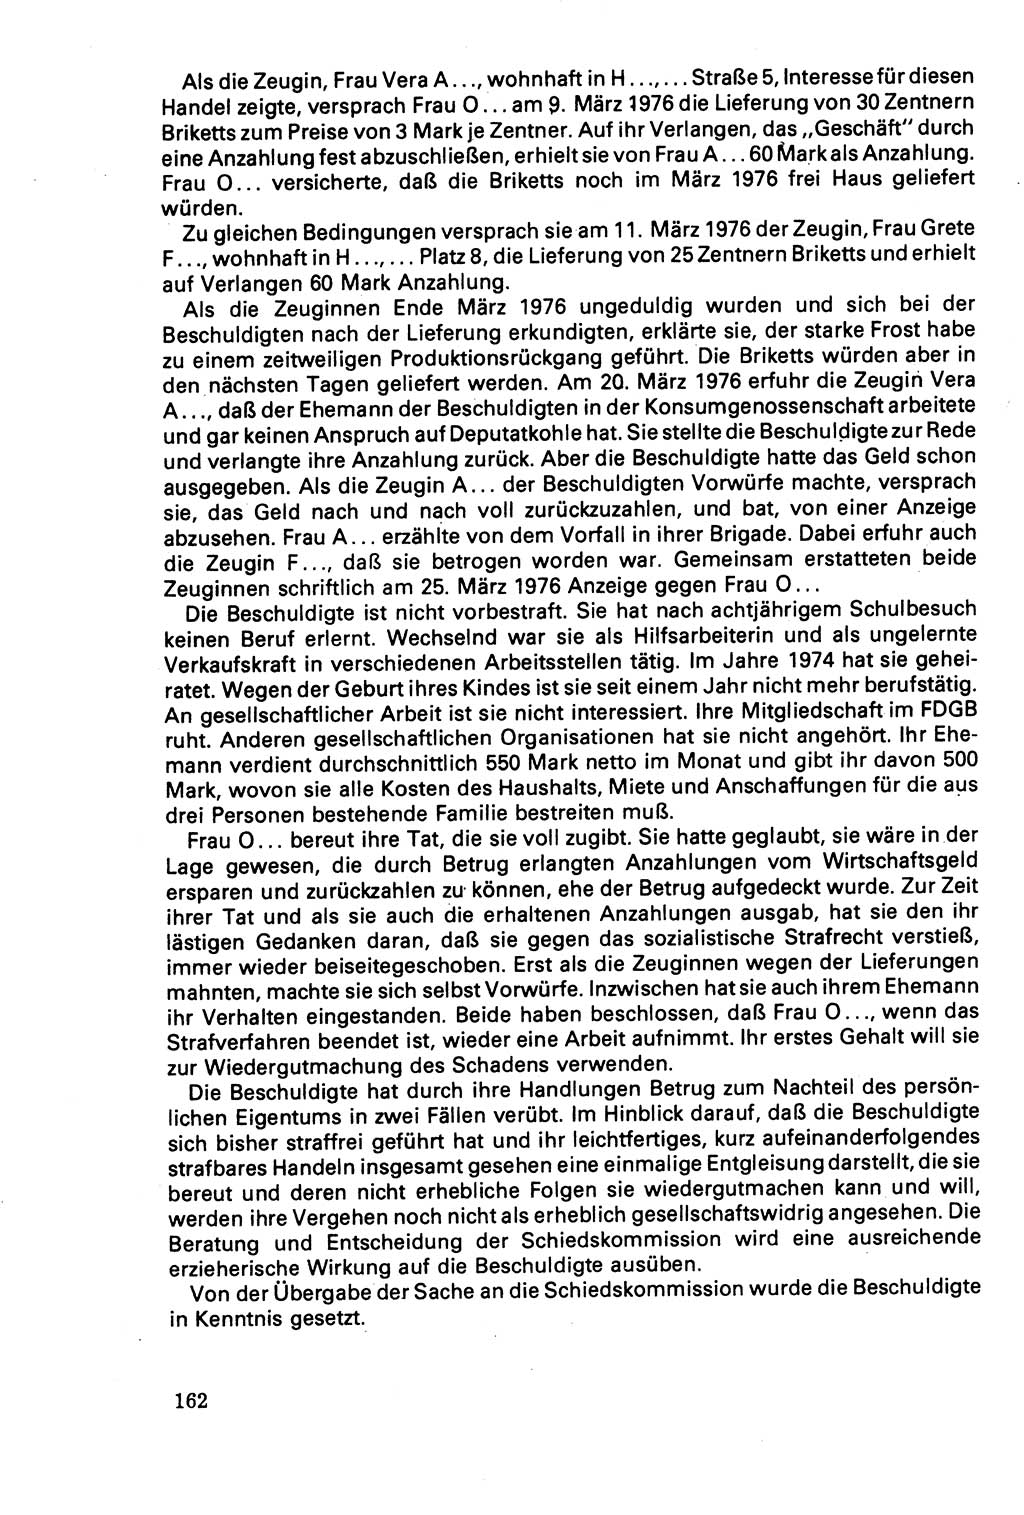 Der Abschluß des Ermittlungsverfahrens [Deutsche Demokratische Republik (DDR)] 1978, Seite 162 (Abschl. EV DDR 1978, S. 162)